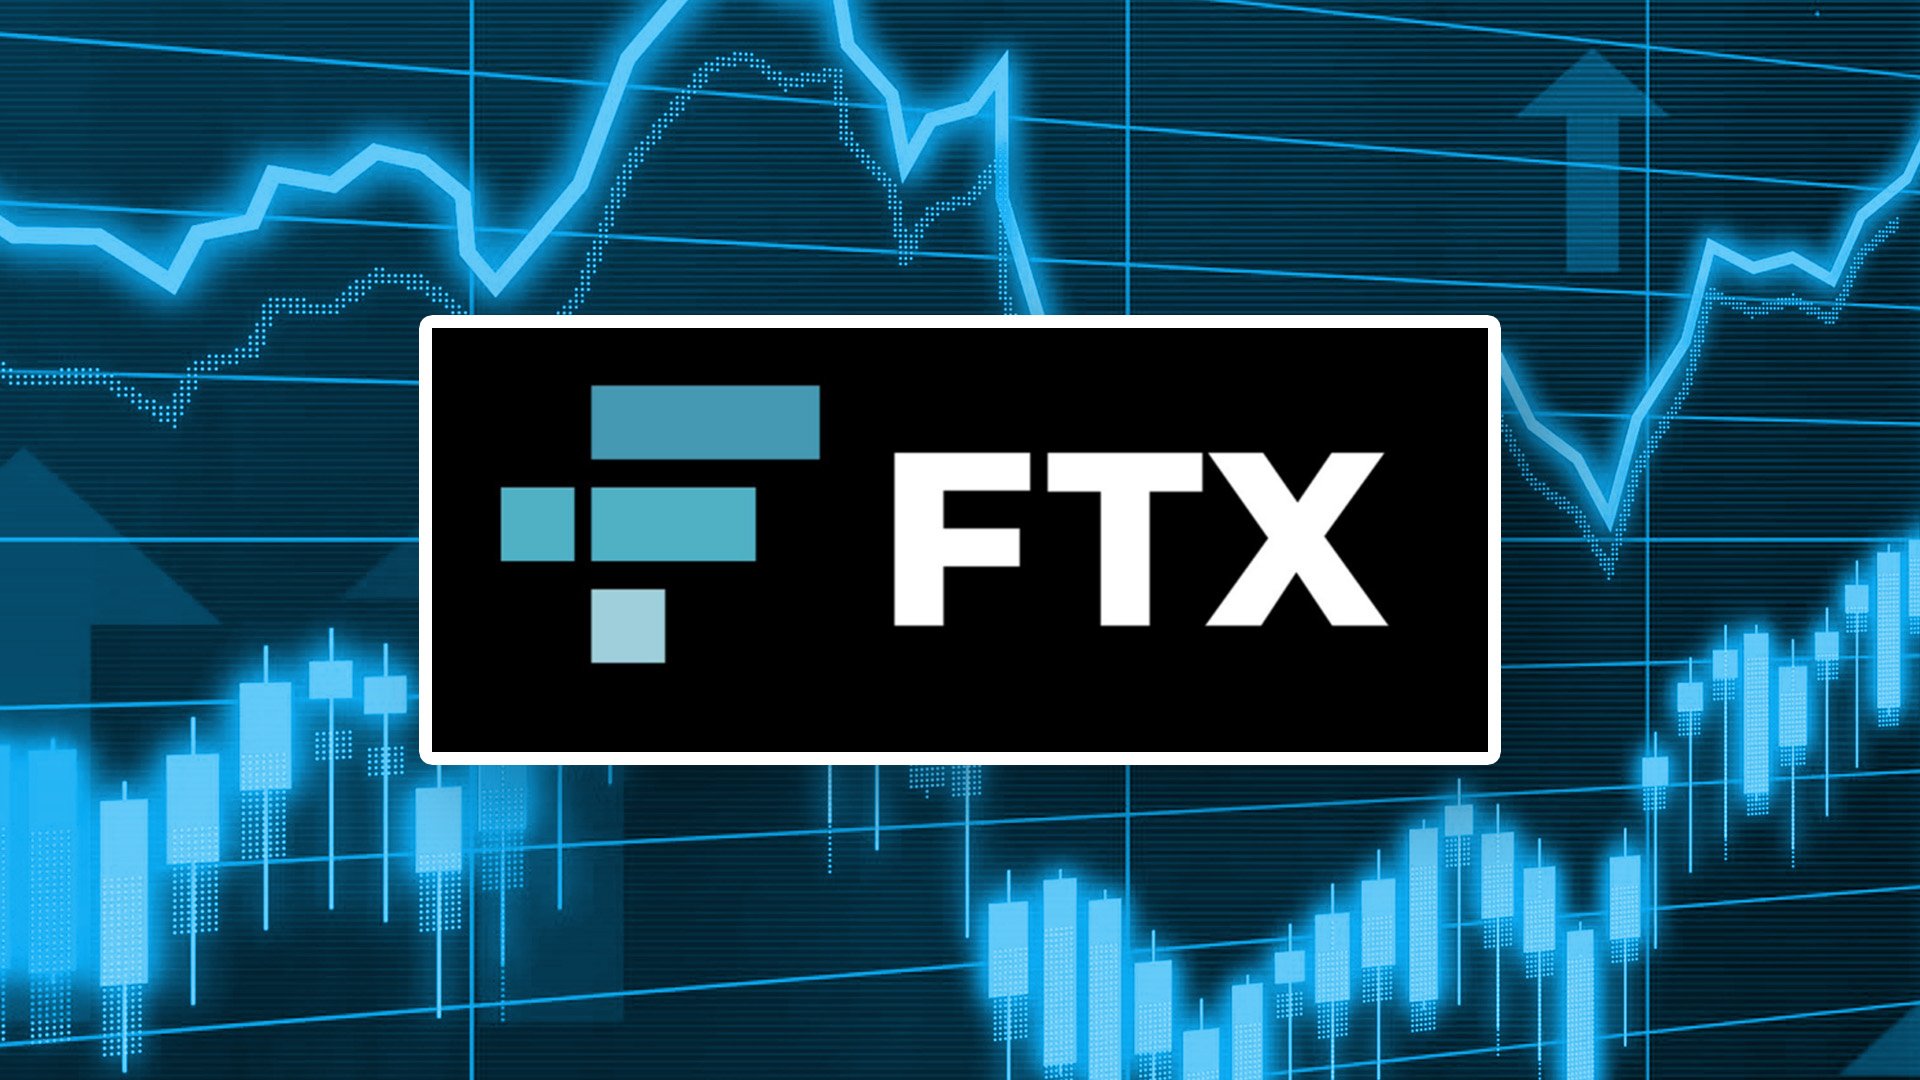 FTX ล้มละลายส่งให้กองทุนคริปโตมูลค่าหลายล้านเหรียญหยุดชะงัก